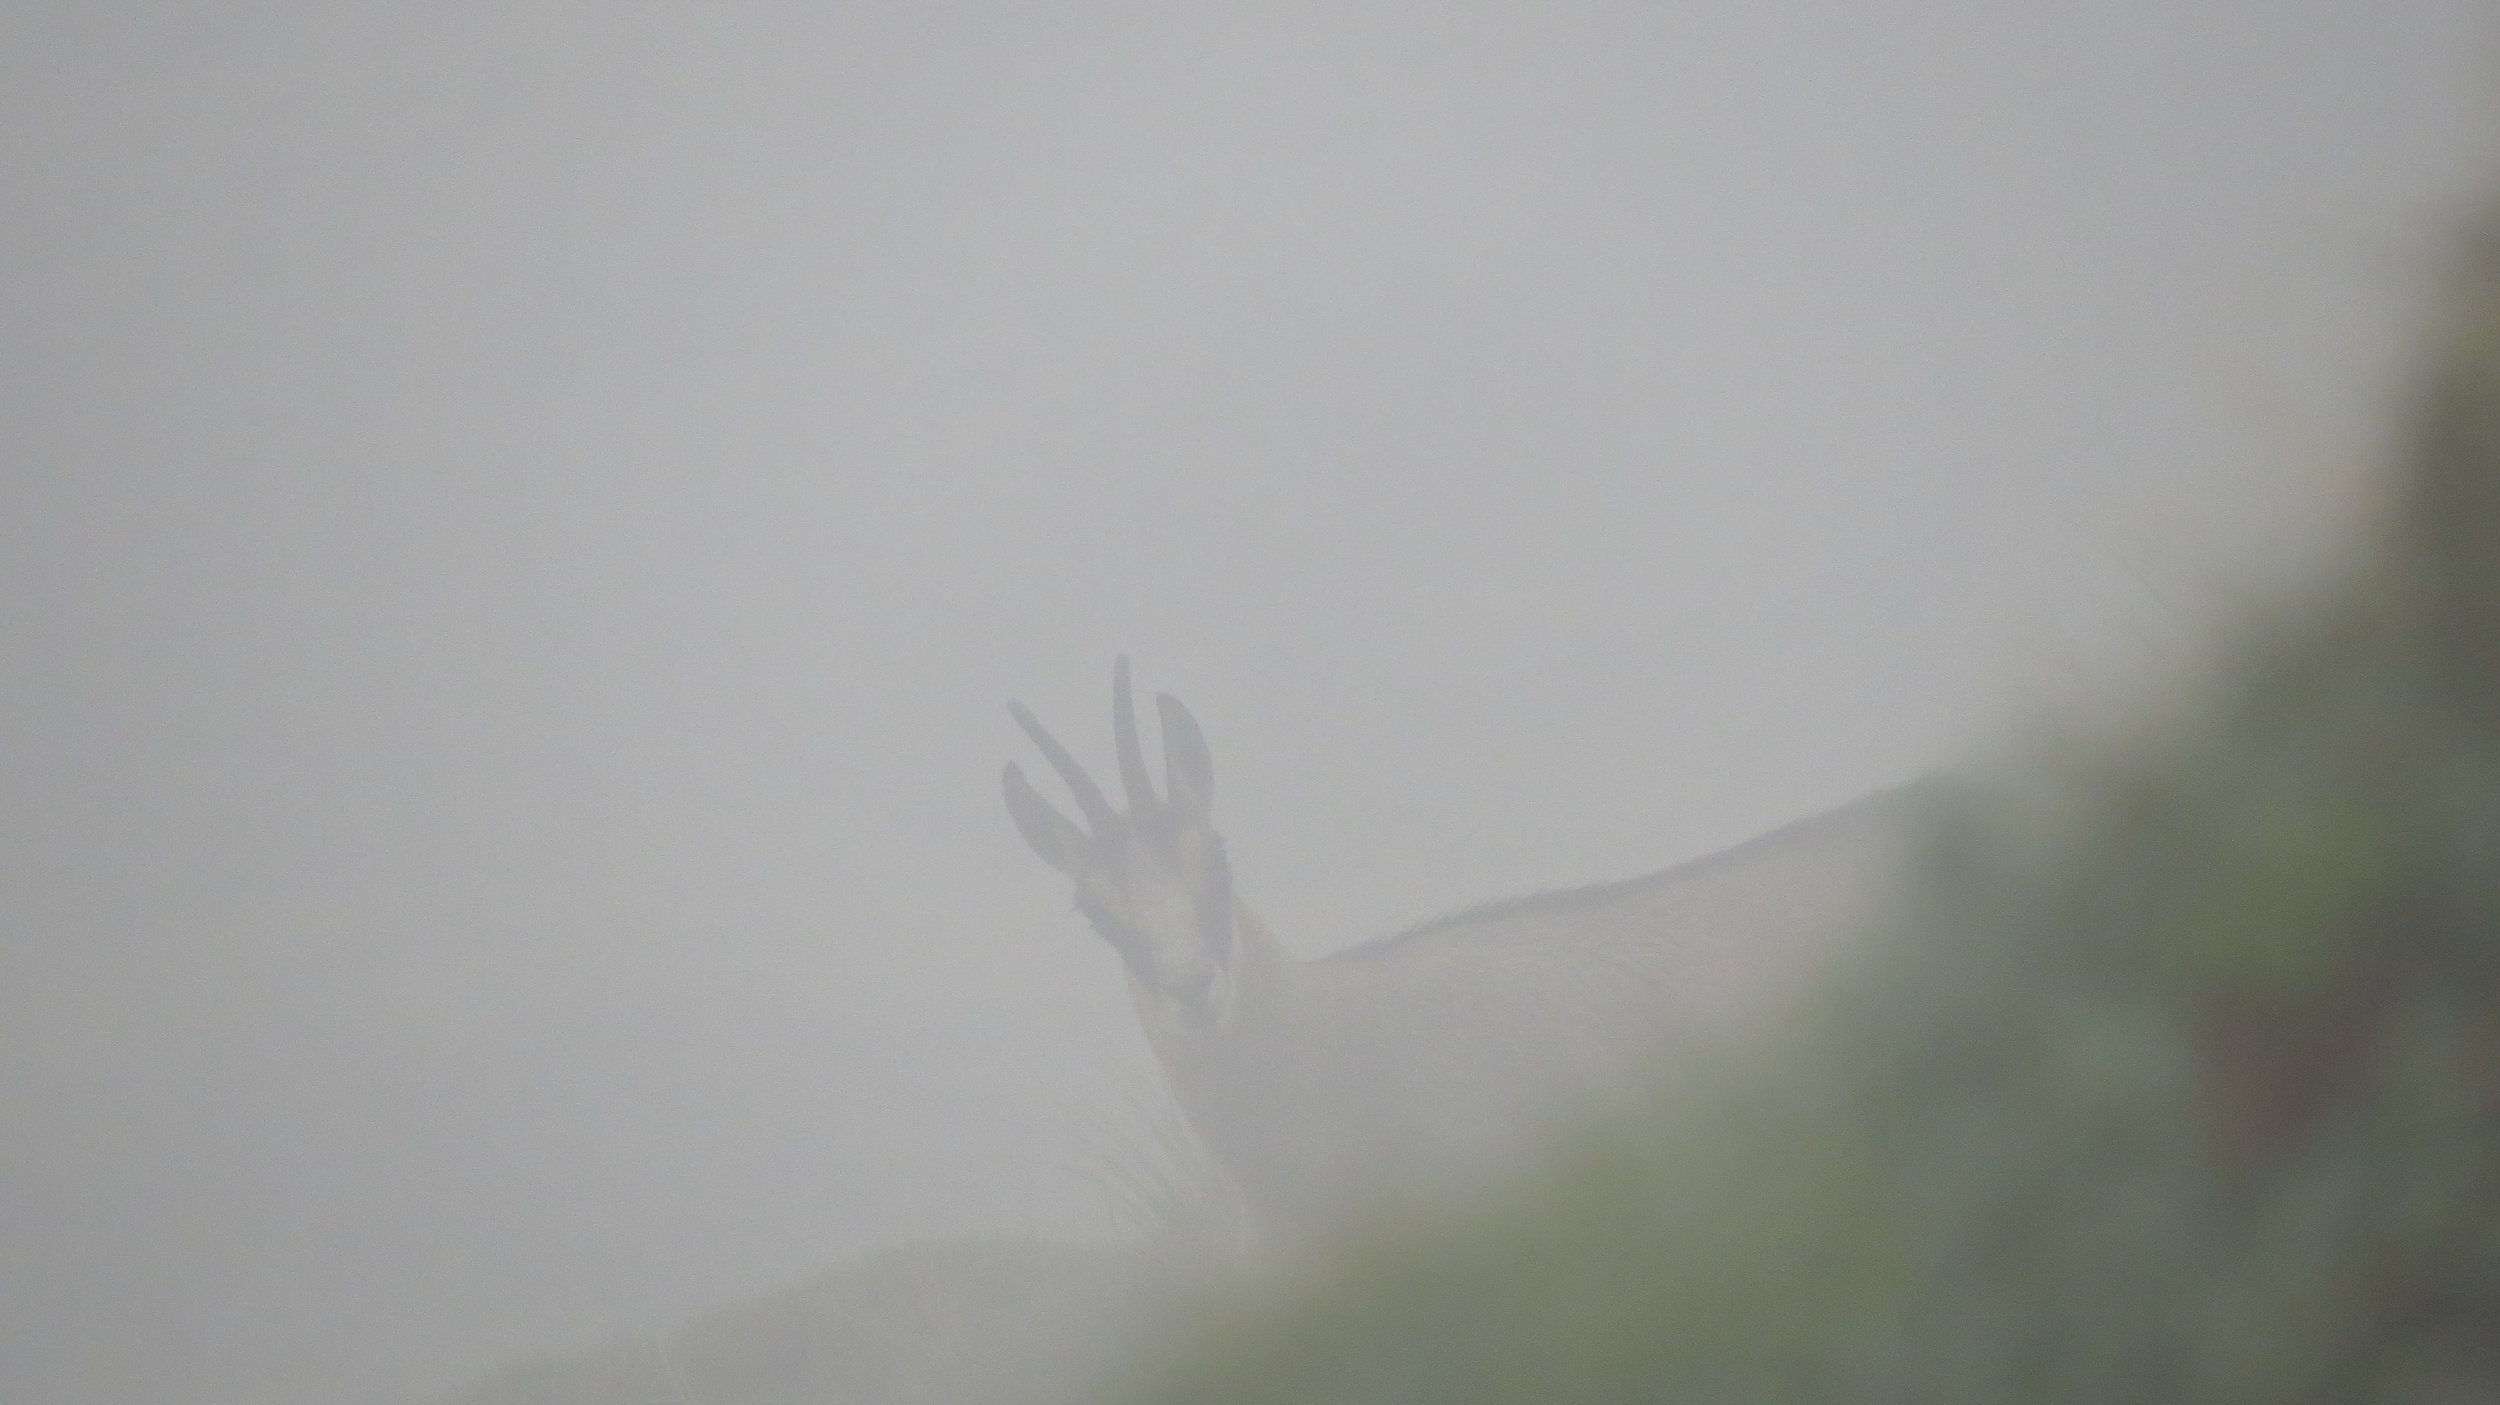  A young buck chamois peeking through the fog 